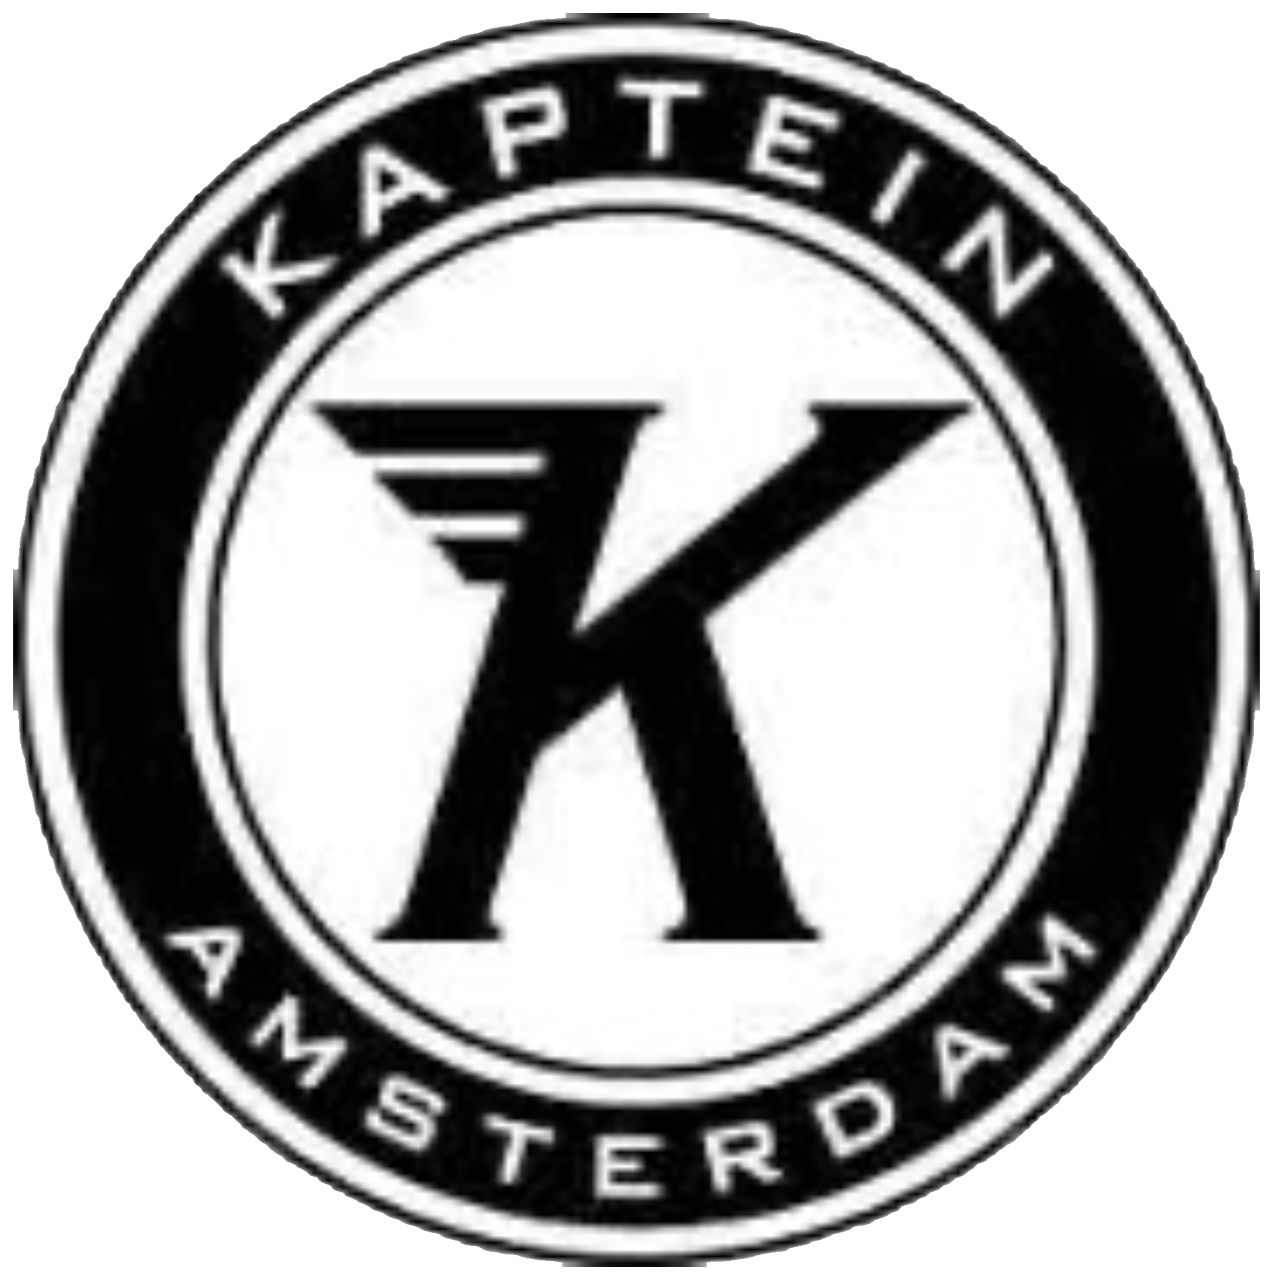 Kaptein Logo